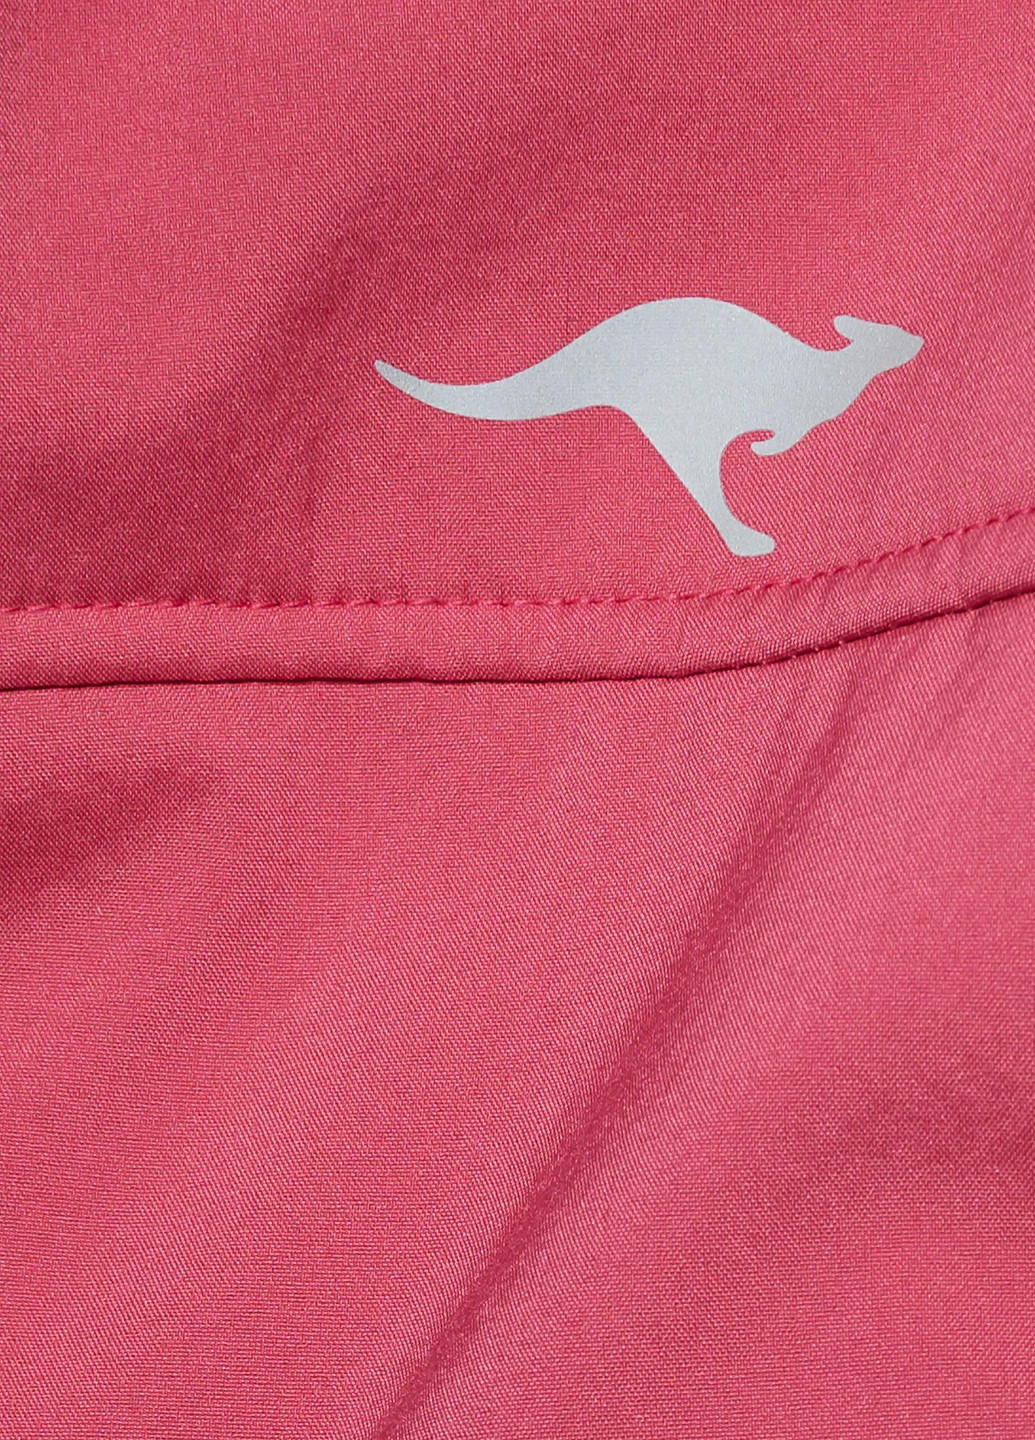 Розовая демисезонная куртка KangaROOS